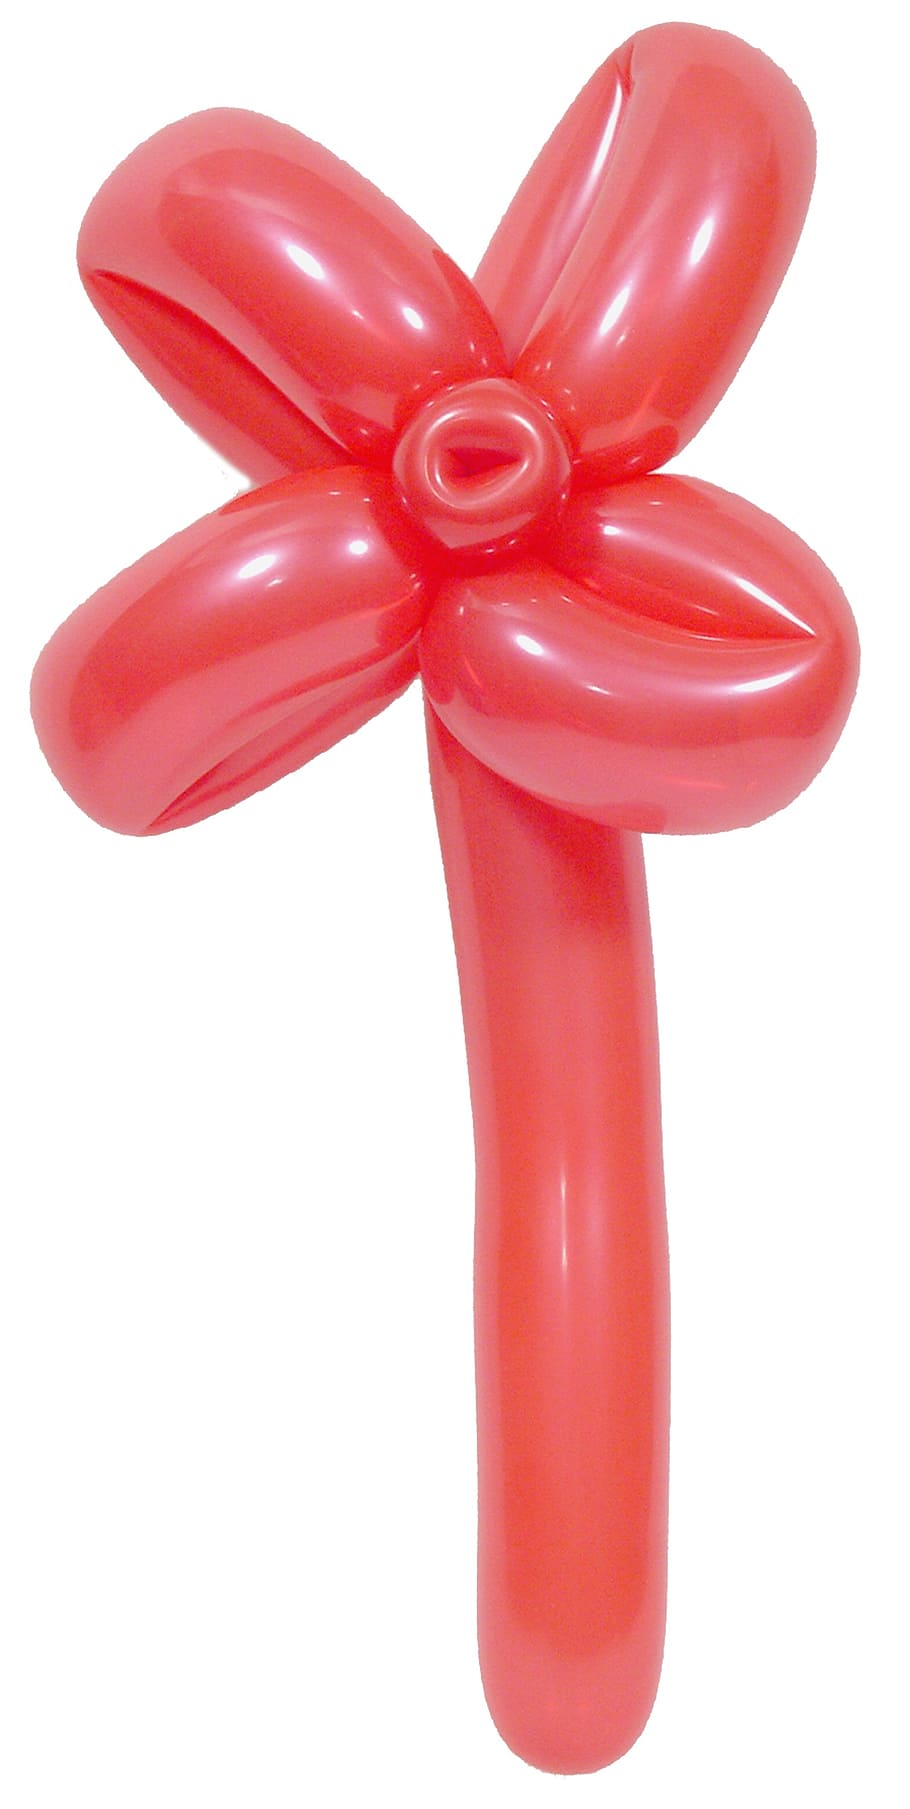 flor de balão vermelho, balão, escultura, flor, diversão, criança, colorido, brinquedo, animal, infância